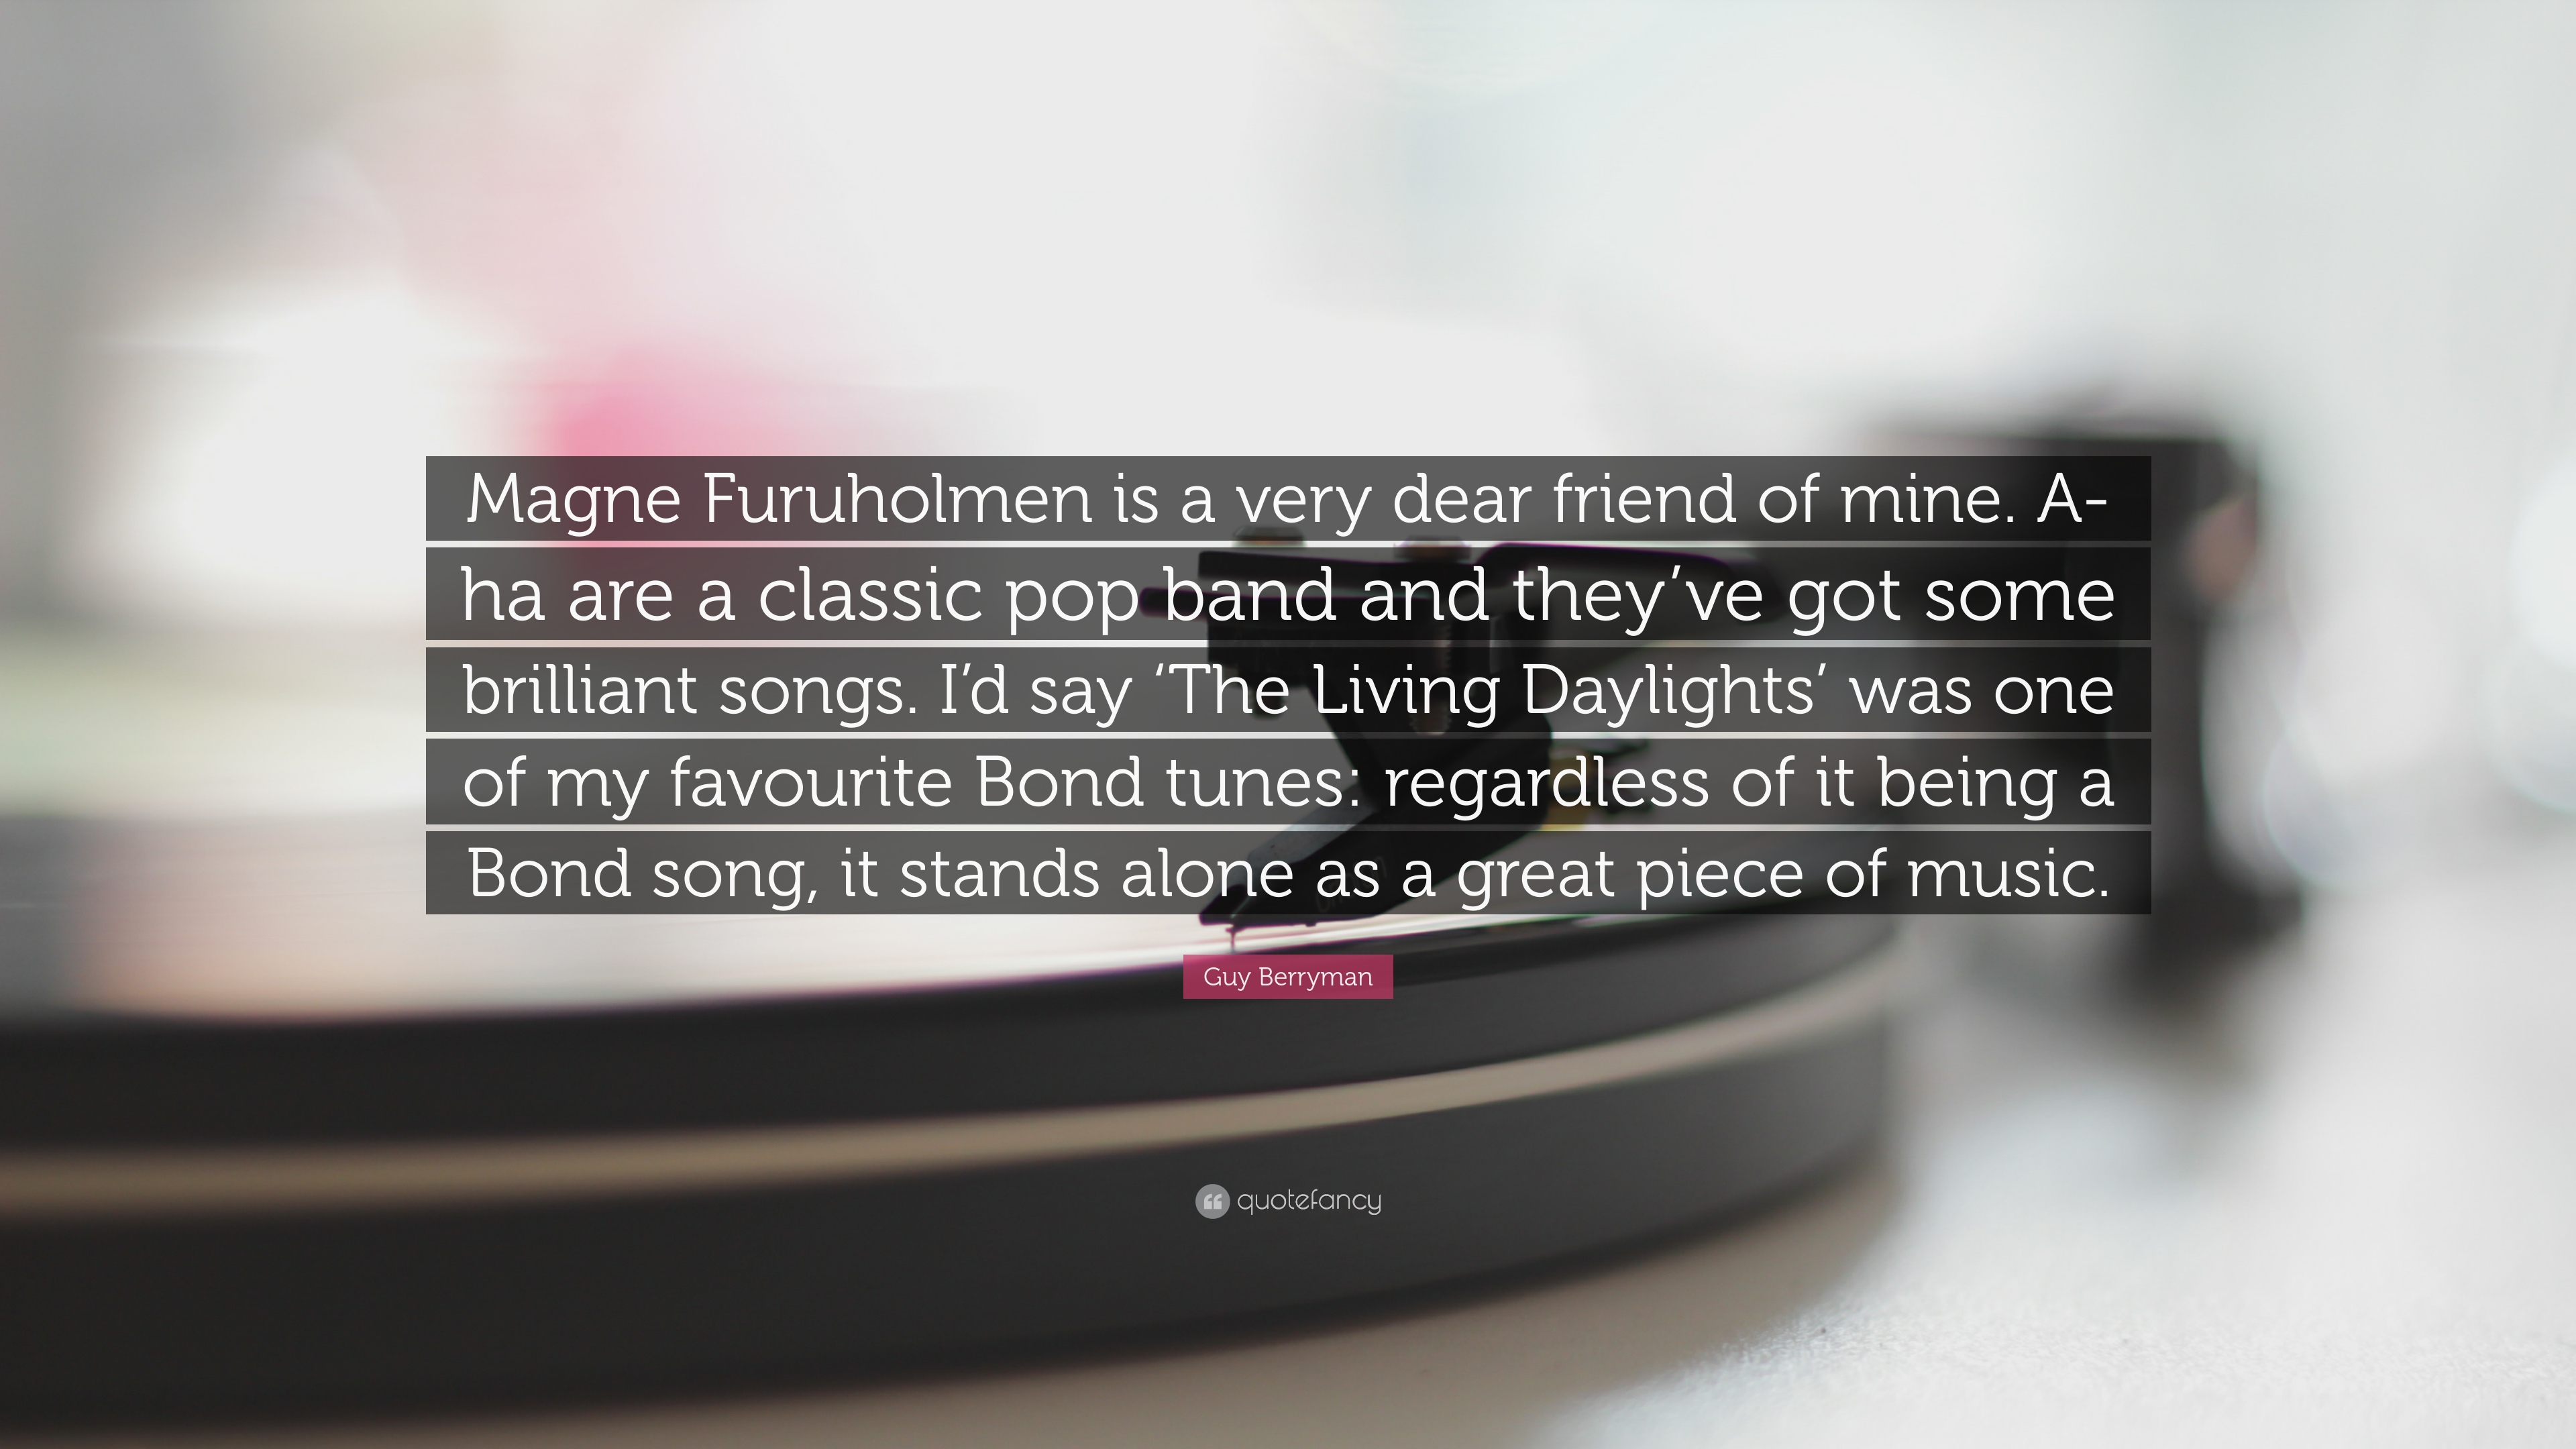 Guy Berryman Quote: “Magne Furuholmen is a very dear friend